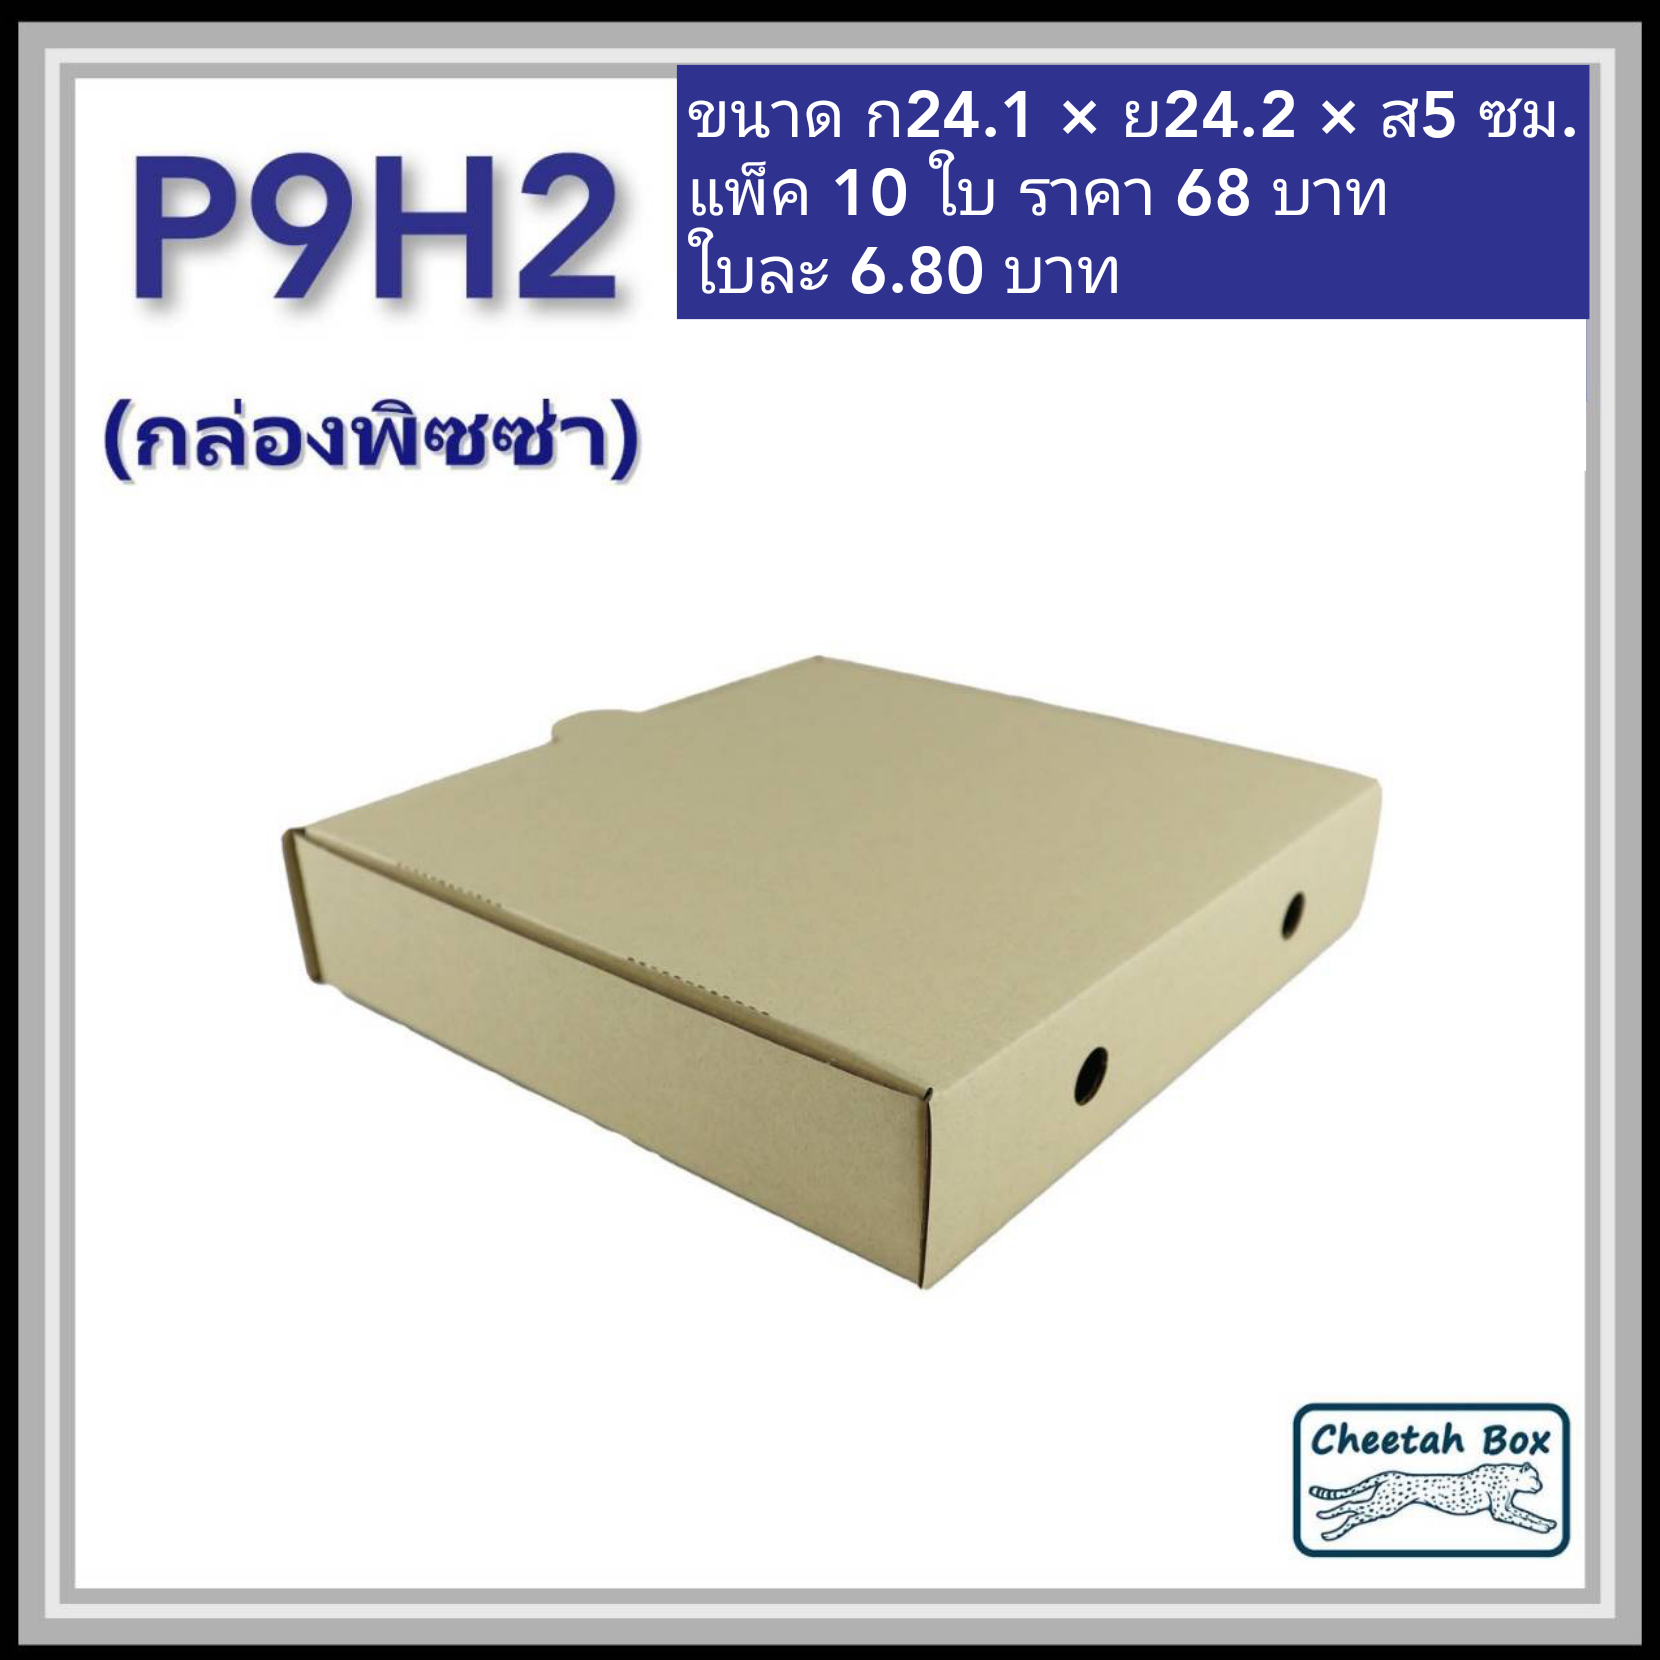 กล่องพิซซ่า 9 นิ้วสูง 2 นิ้ว รหัส P9H2 ไม่พิมพ์ (Pizza Box) ขนาด 24.1W x 24.1L x 5H cm.